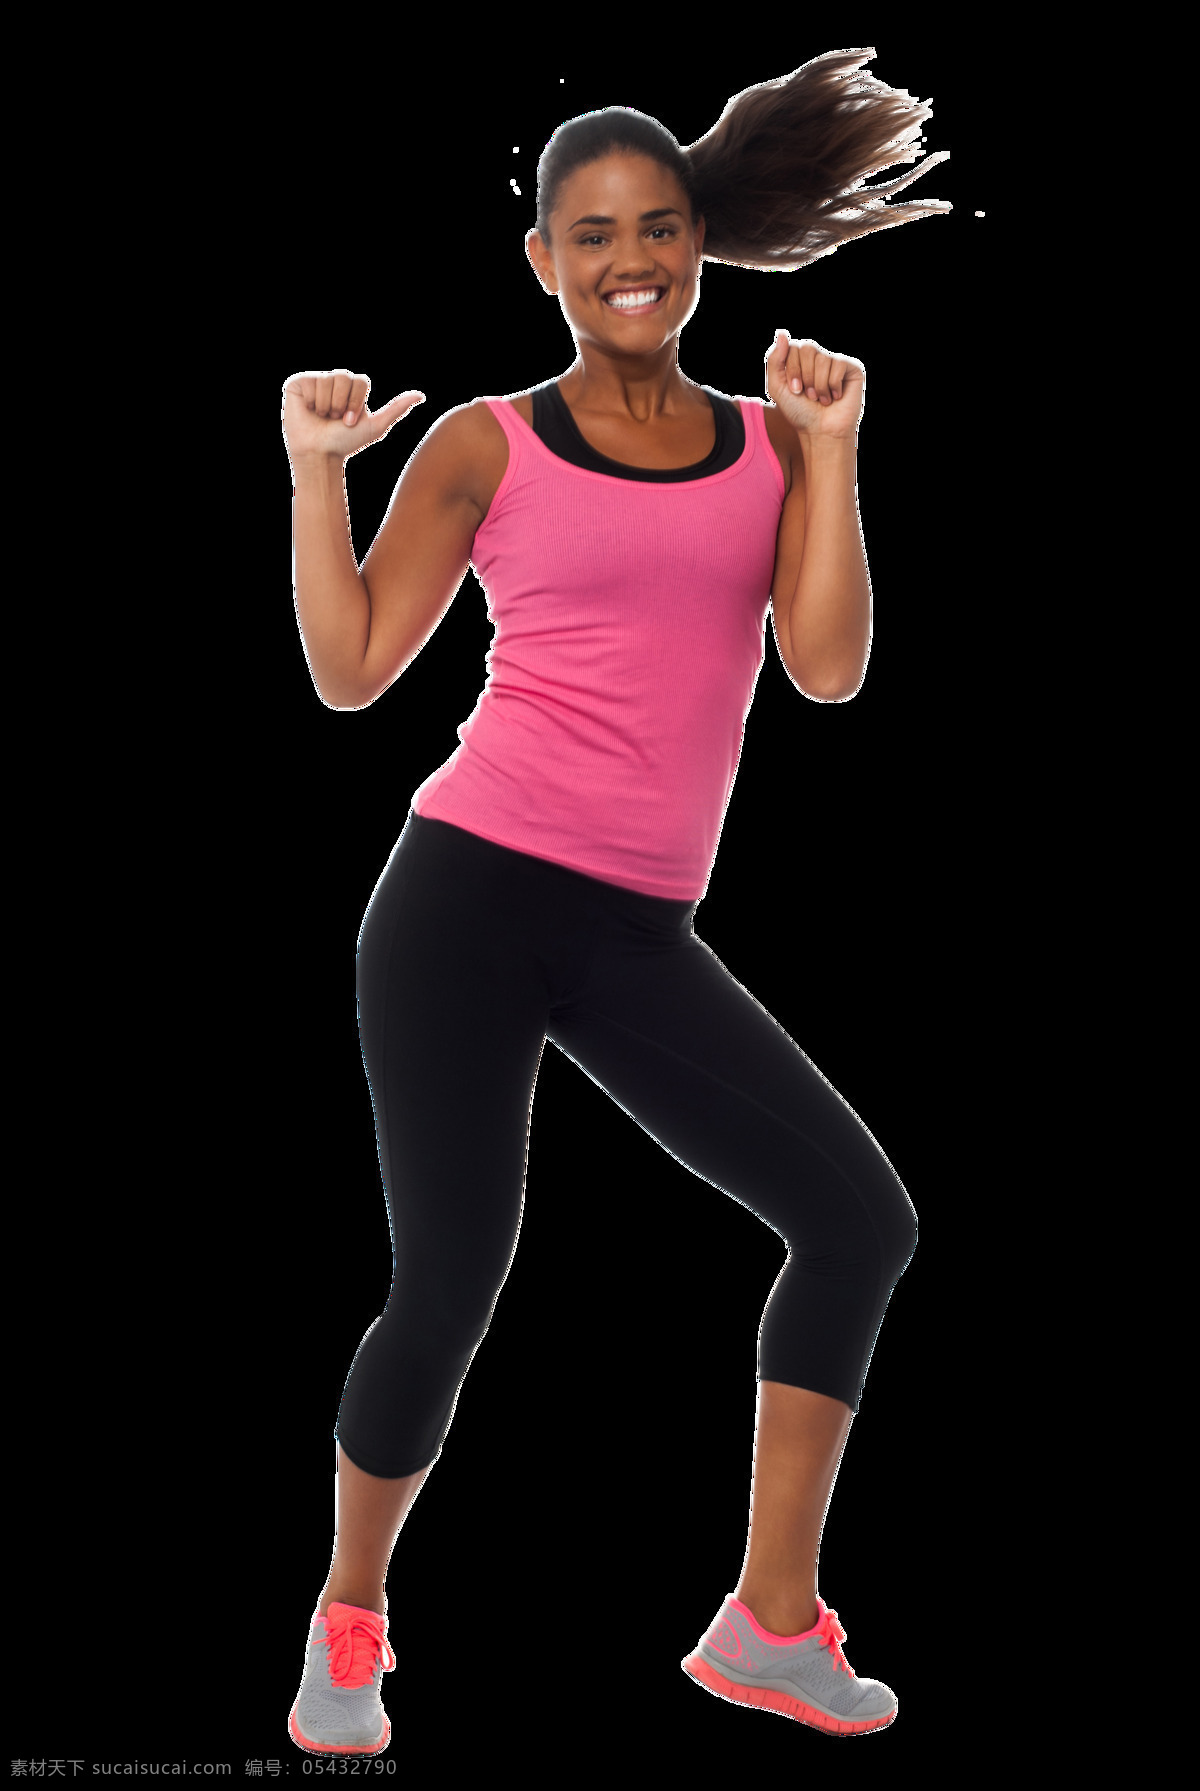 跳 健身操 黑人 女性 黑人女性 健身服 跳舞 健身 快乐 甩头发 生活人物 人物图片